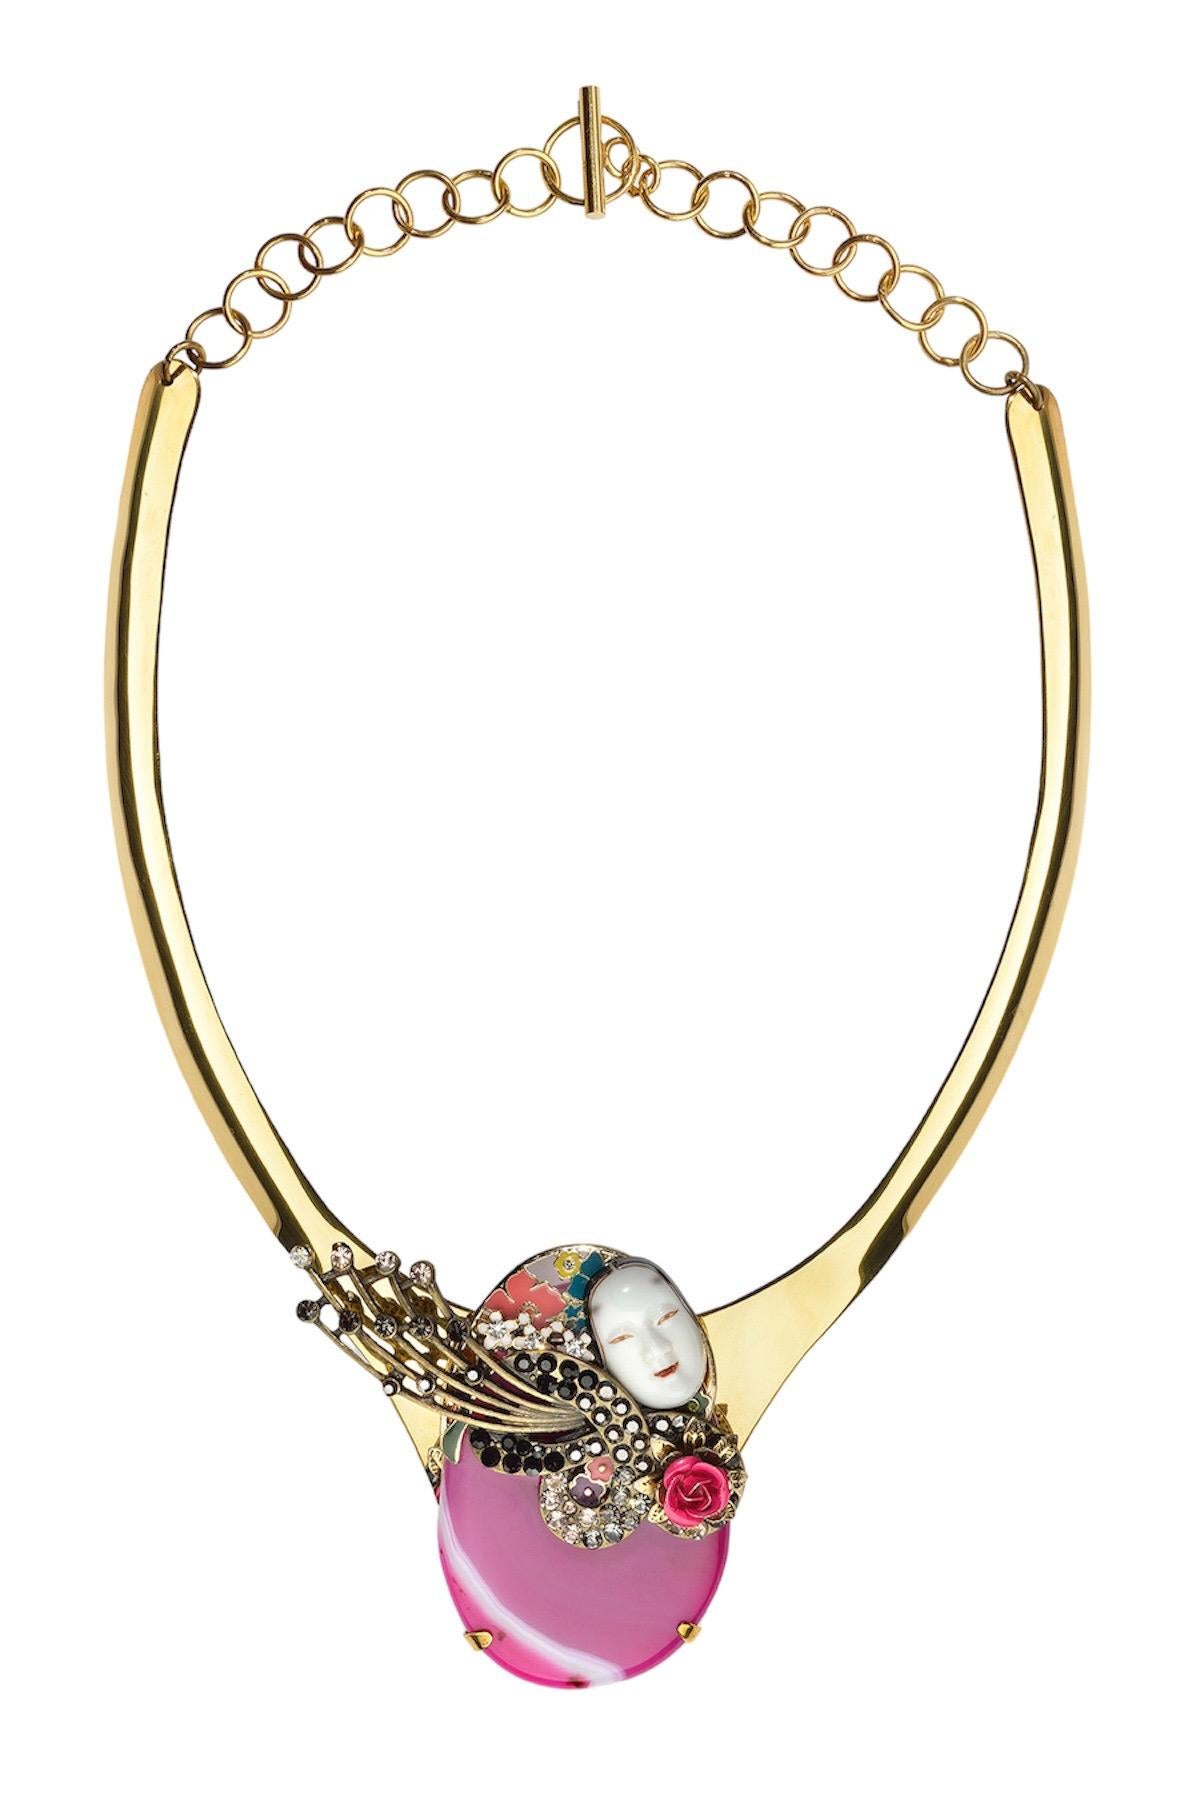 Diese Halskette ist ein Einzelstück, das für Ludmila Navarro, Künstlerin und Schmuckdesignerin, entworfen wurde. Ein vollständig handgefertigtes Schmuckstück, das in einem nachhaltigen Prozess entstanden ist, bei dem sie verschiedene antike und